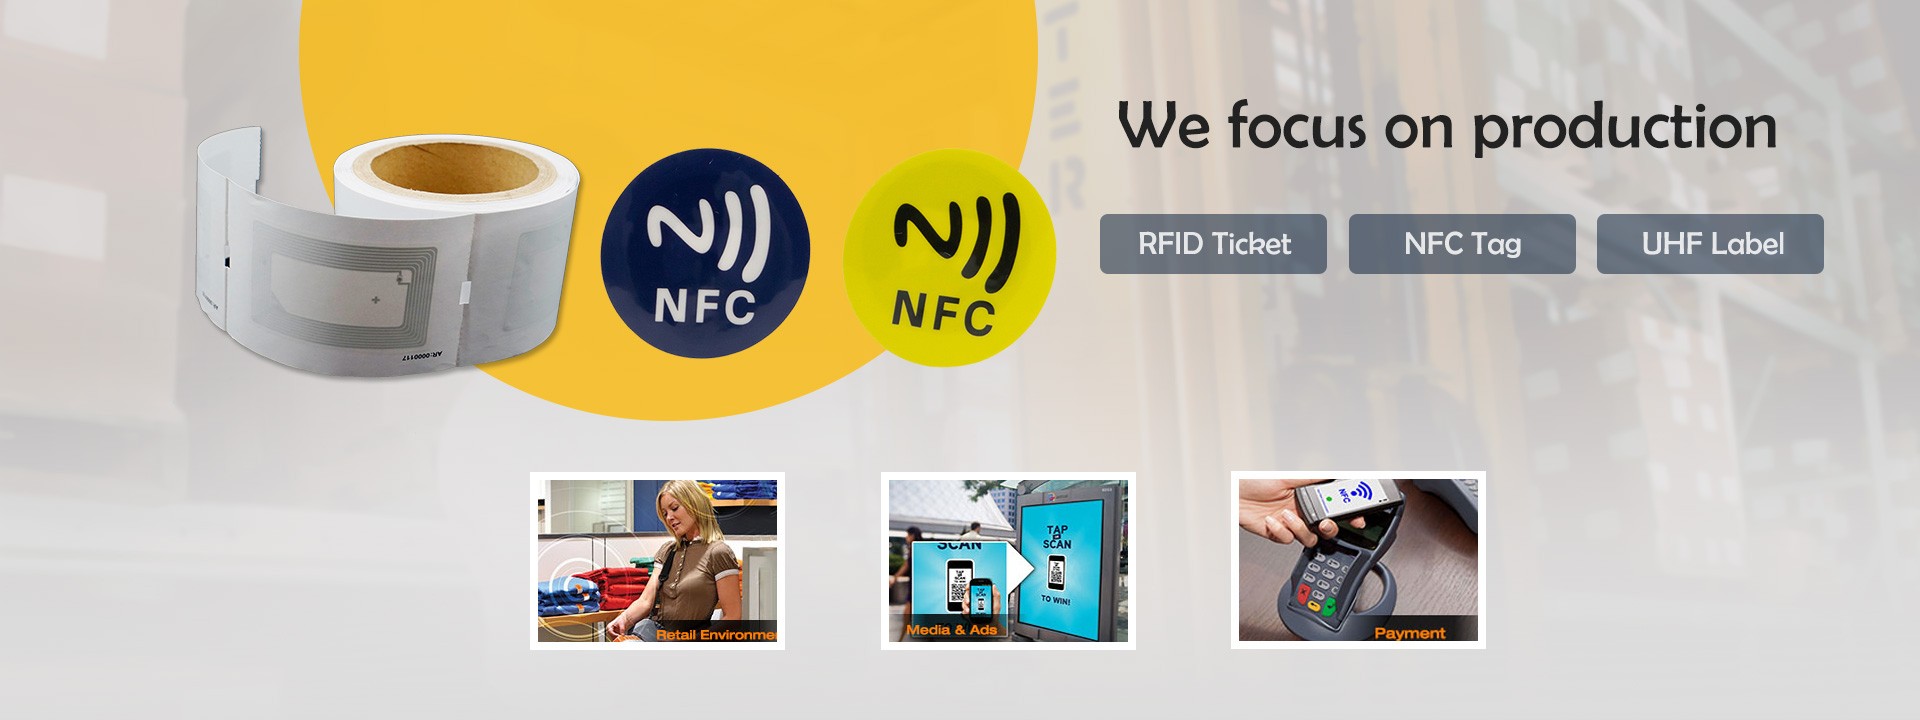 Adesivo NFC